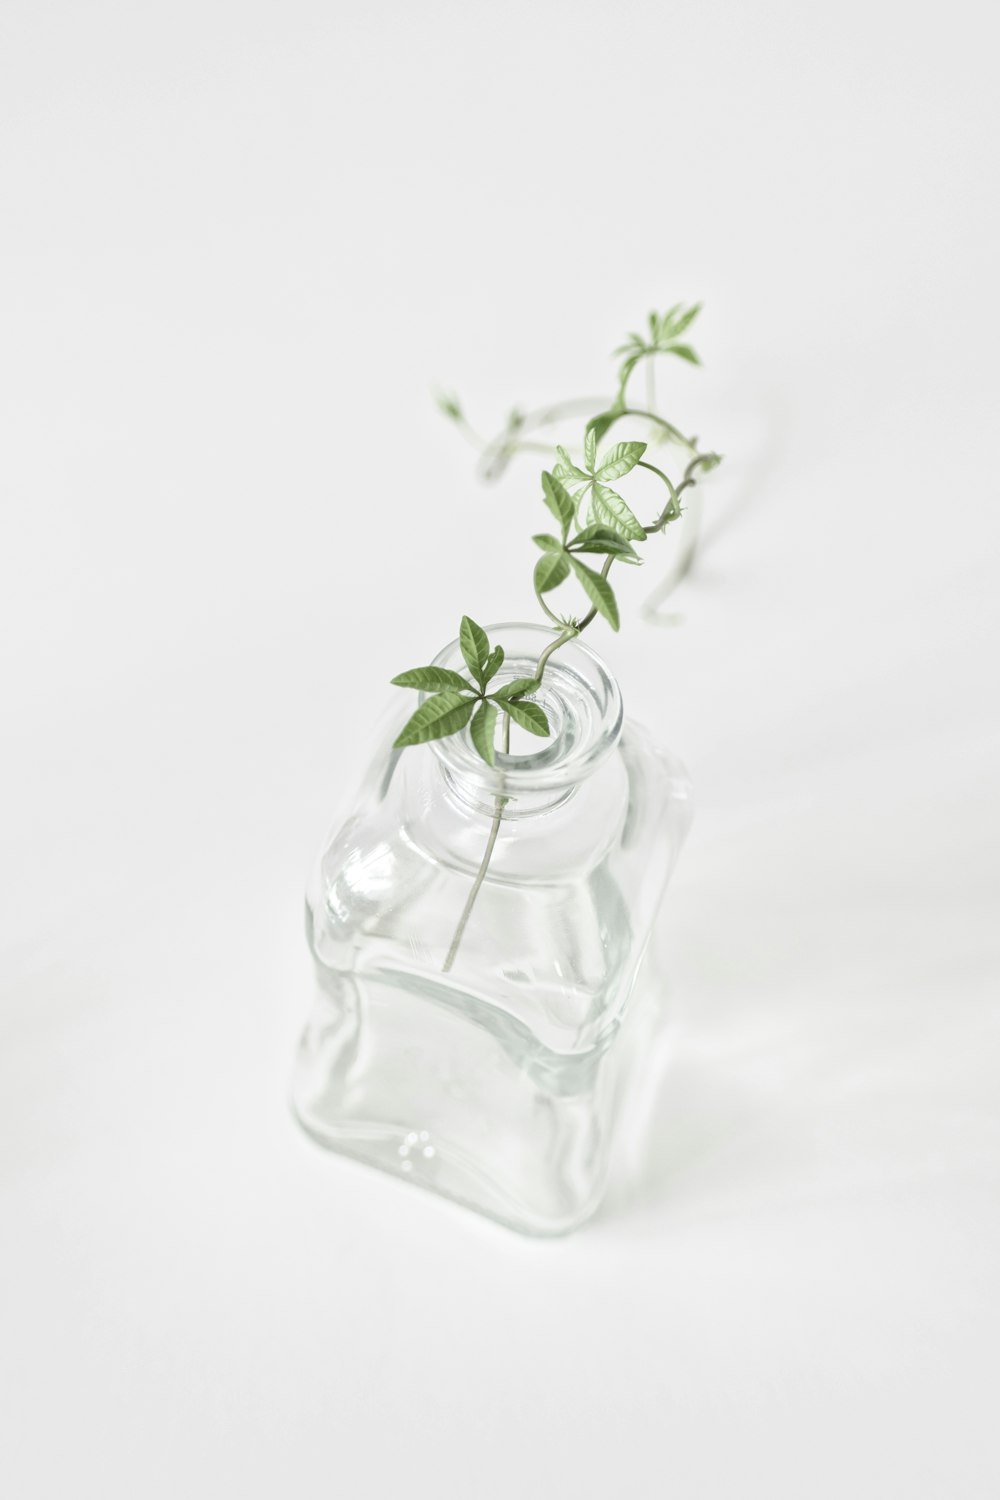 pianta verde in bottiglia di vetro trasparente